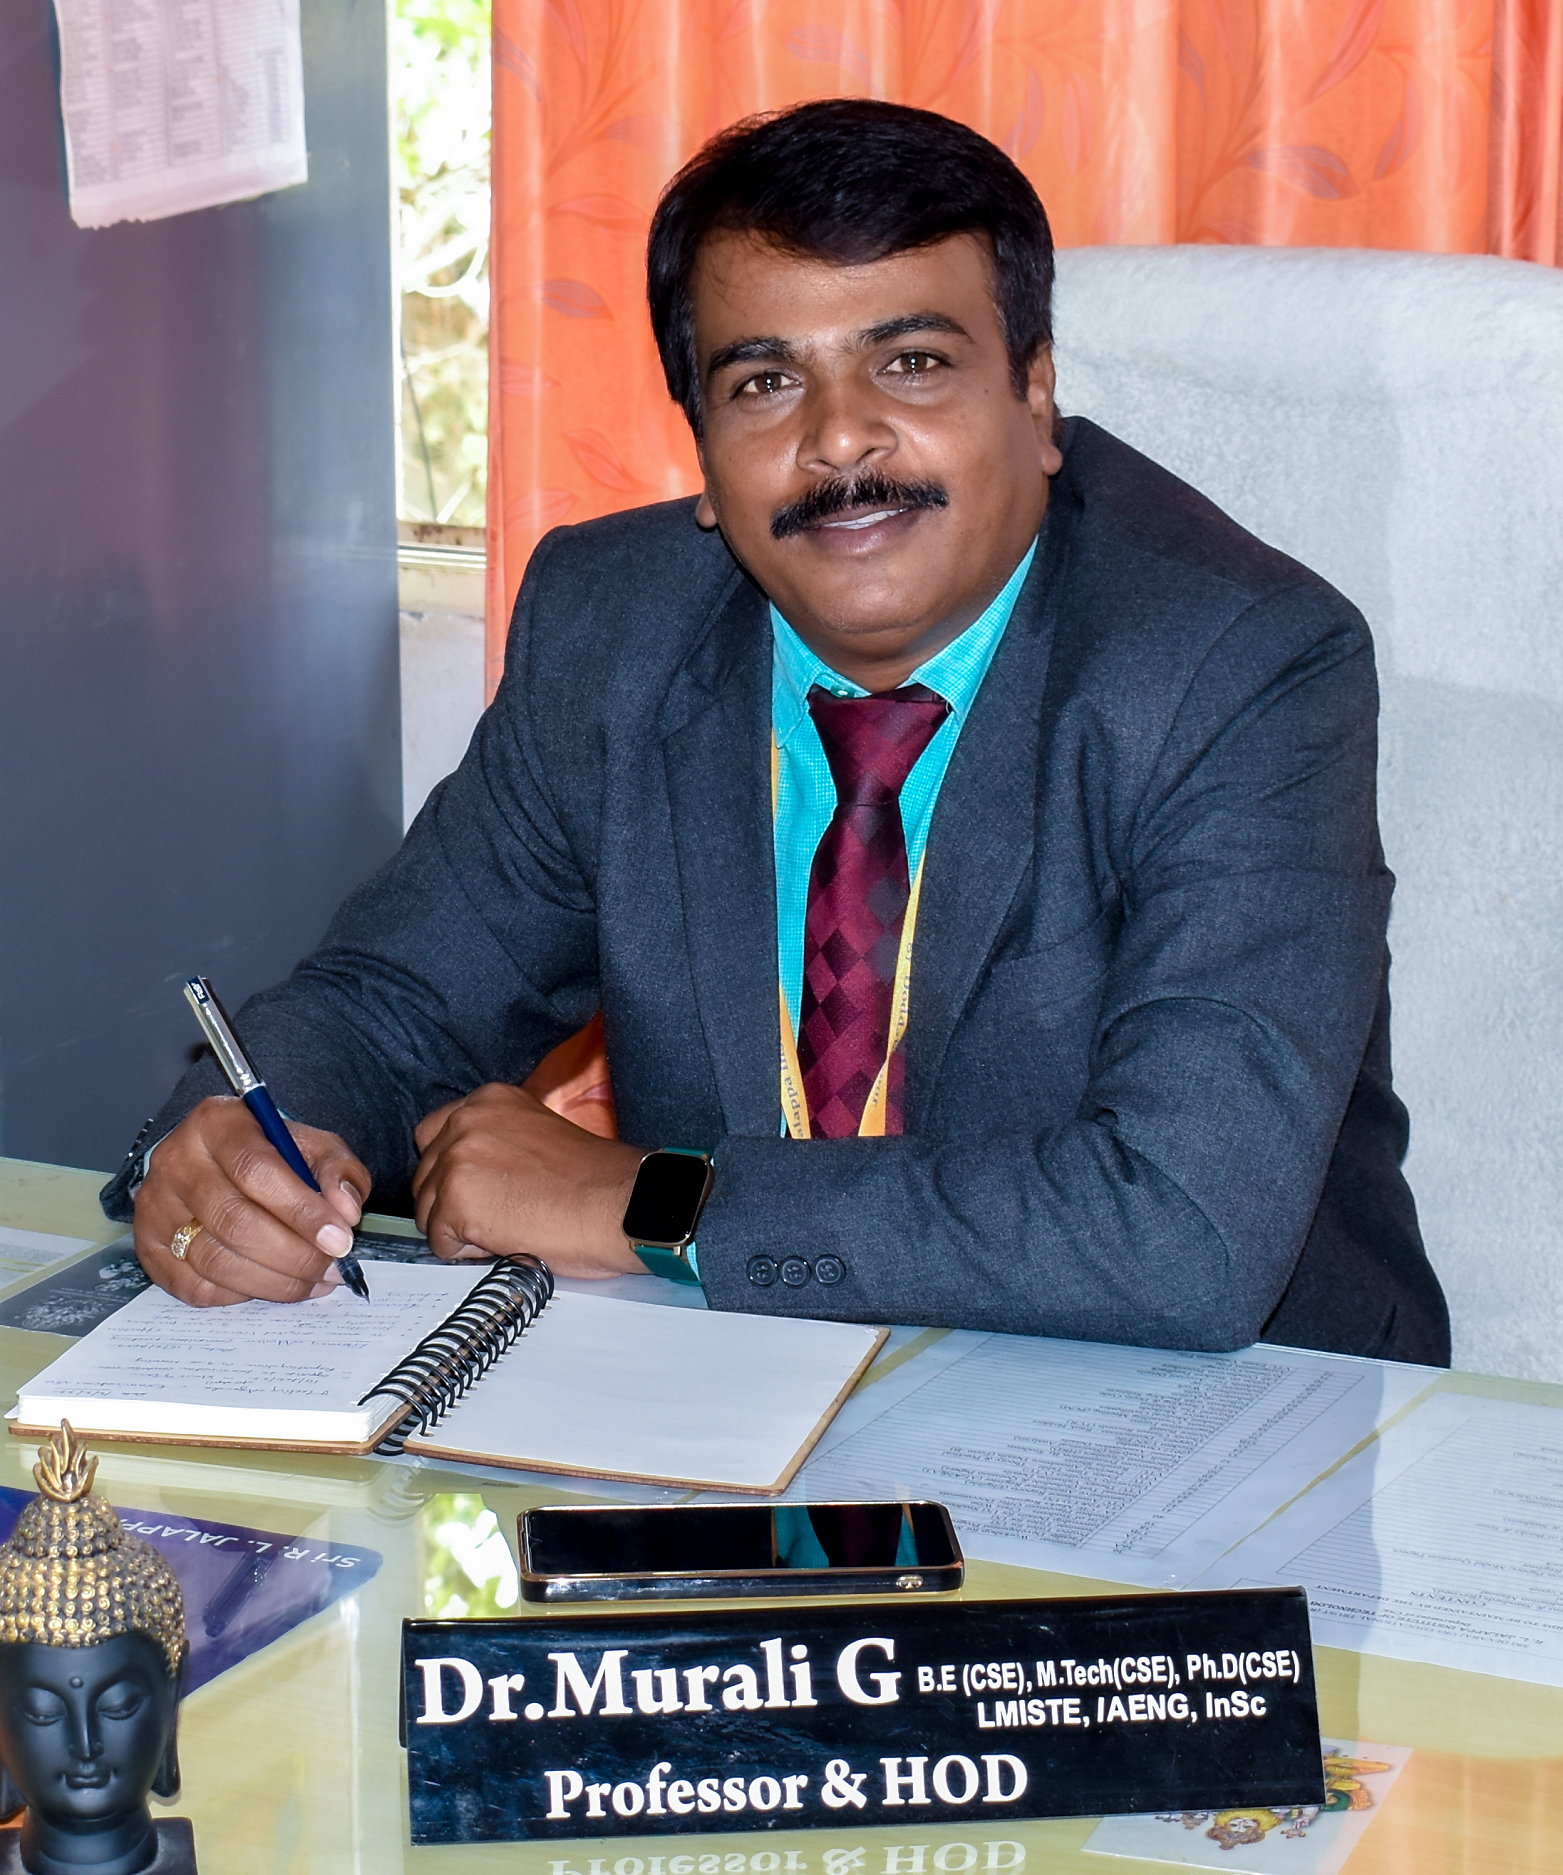 Dr. Murali G